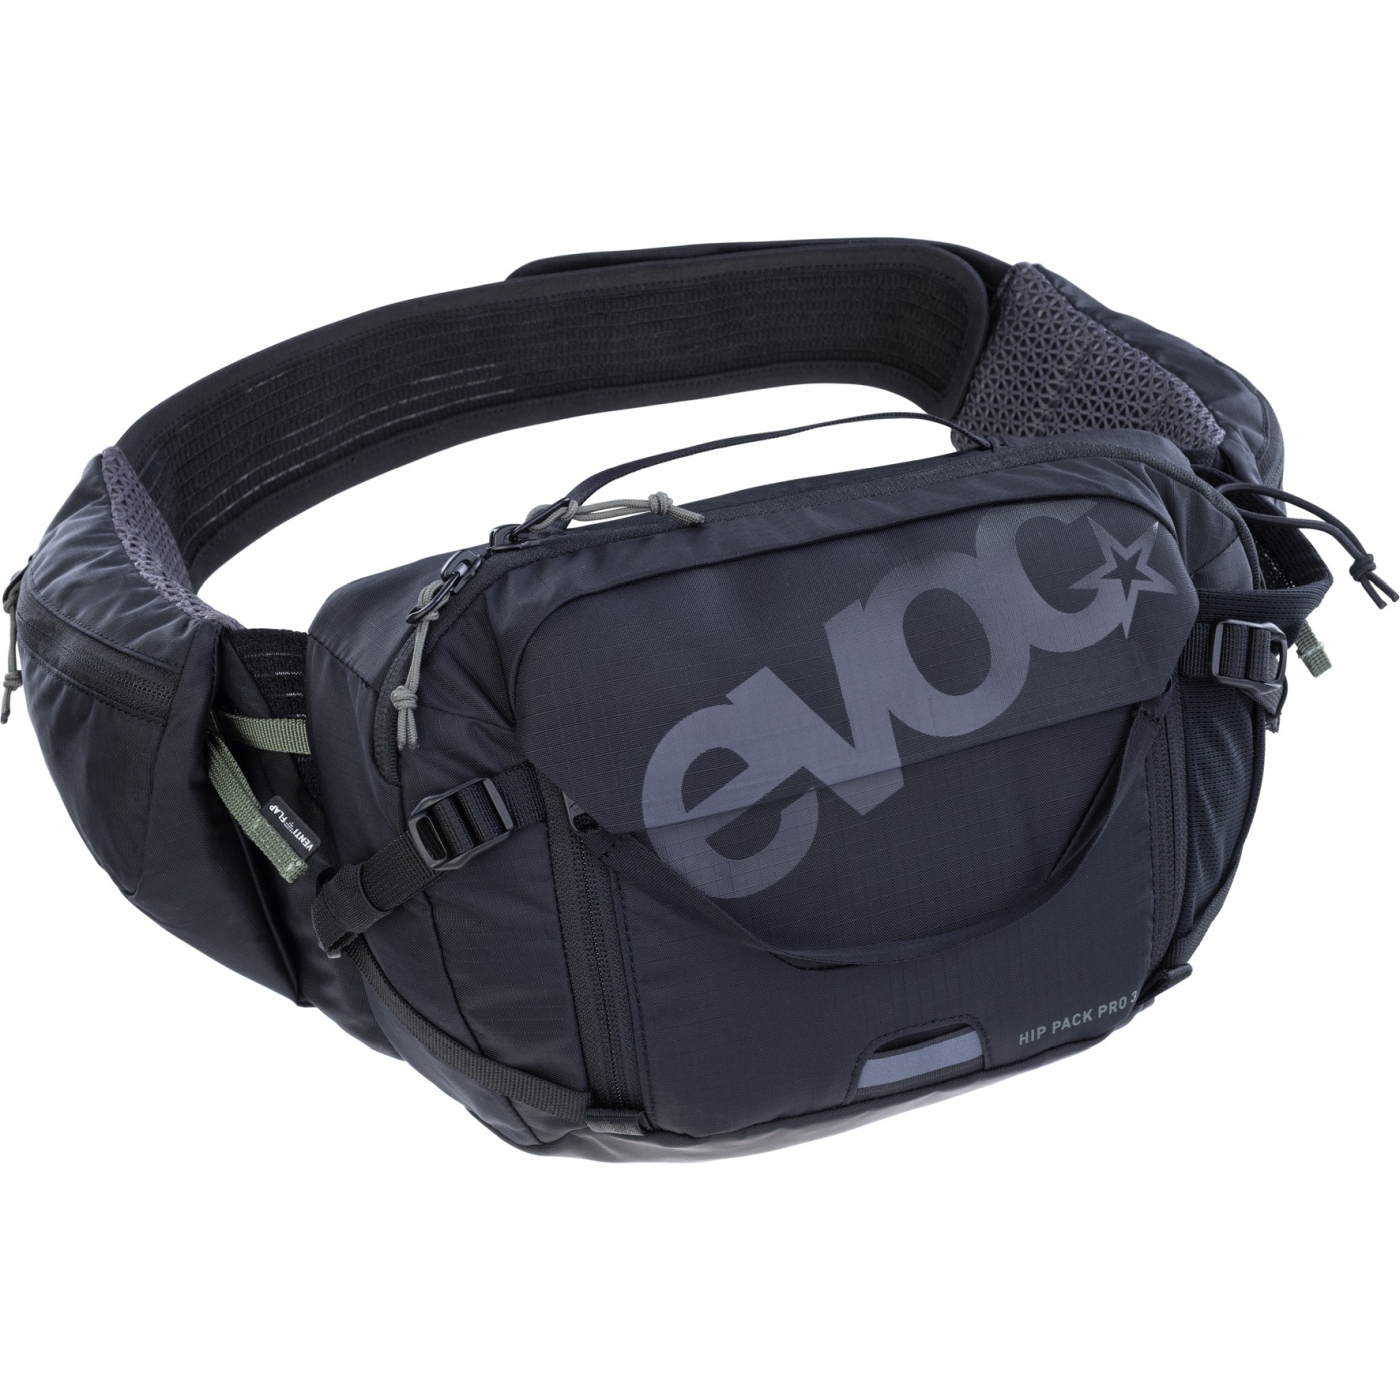 Productfoto van EVOC Hip Pack Pro Heuptas - 3 L - Zwart